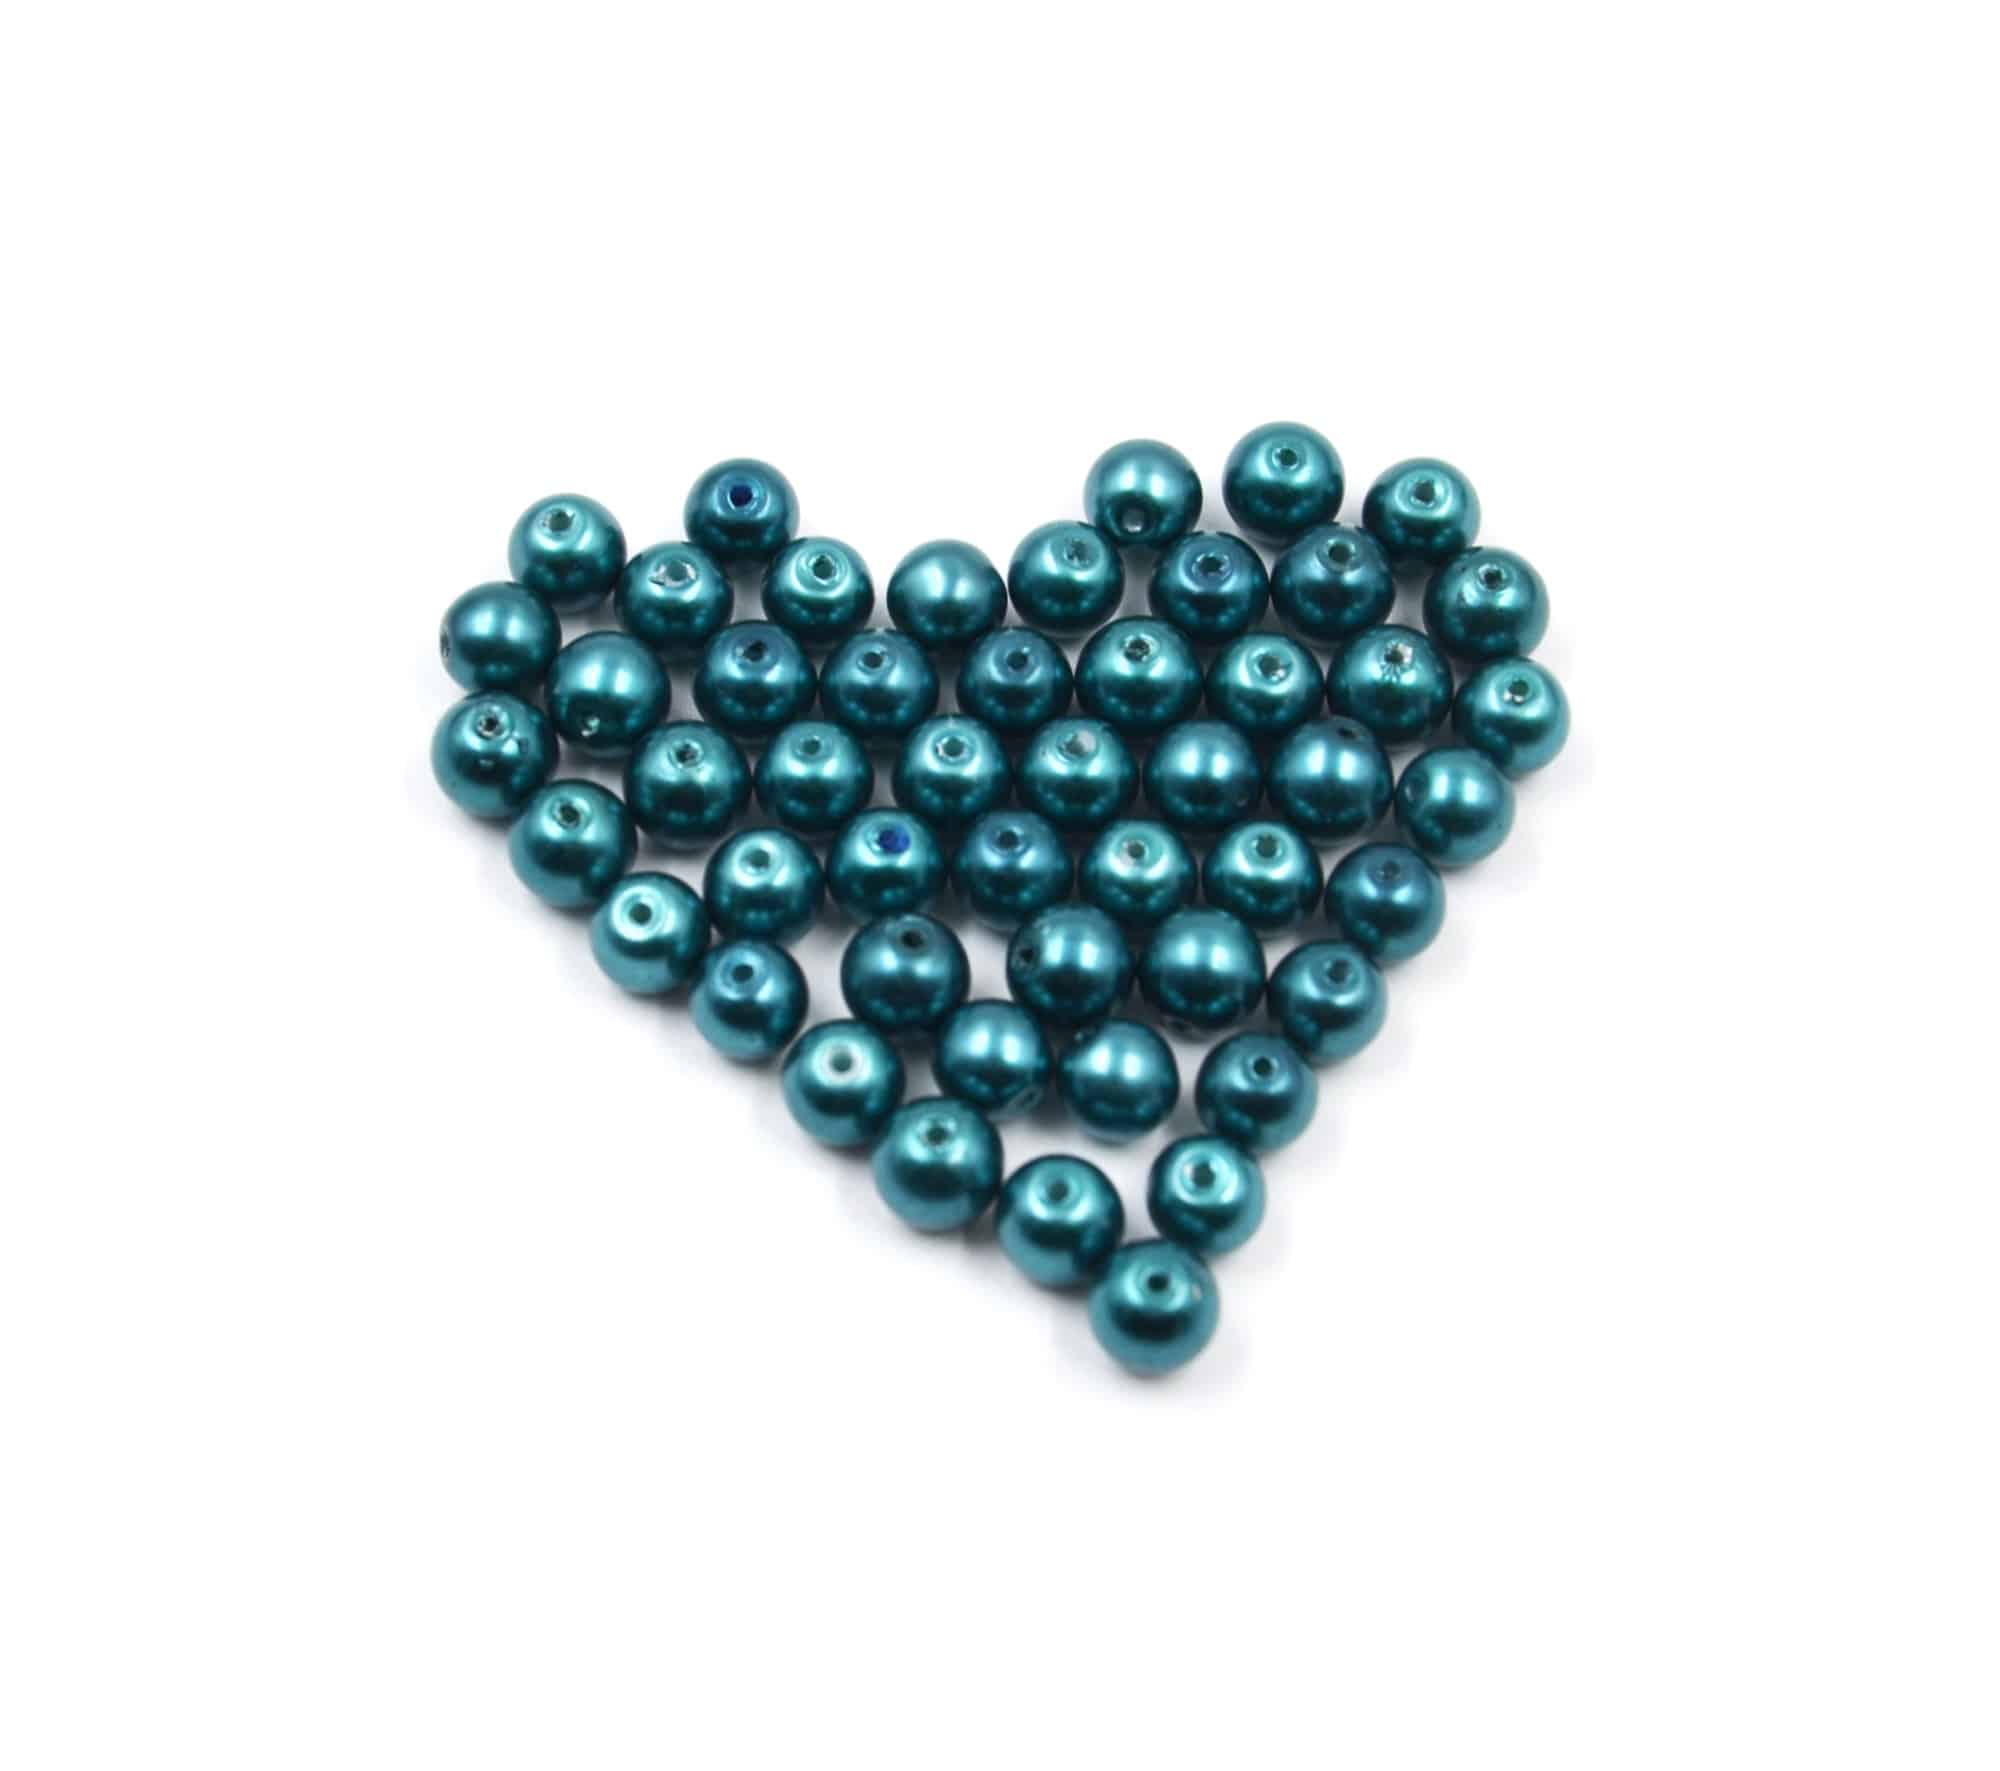 Perles-Nacre-et-Acrylique-8mm-a-Enfiler-Couleur-Bleu-Petrole